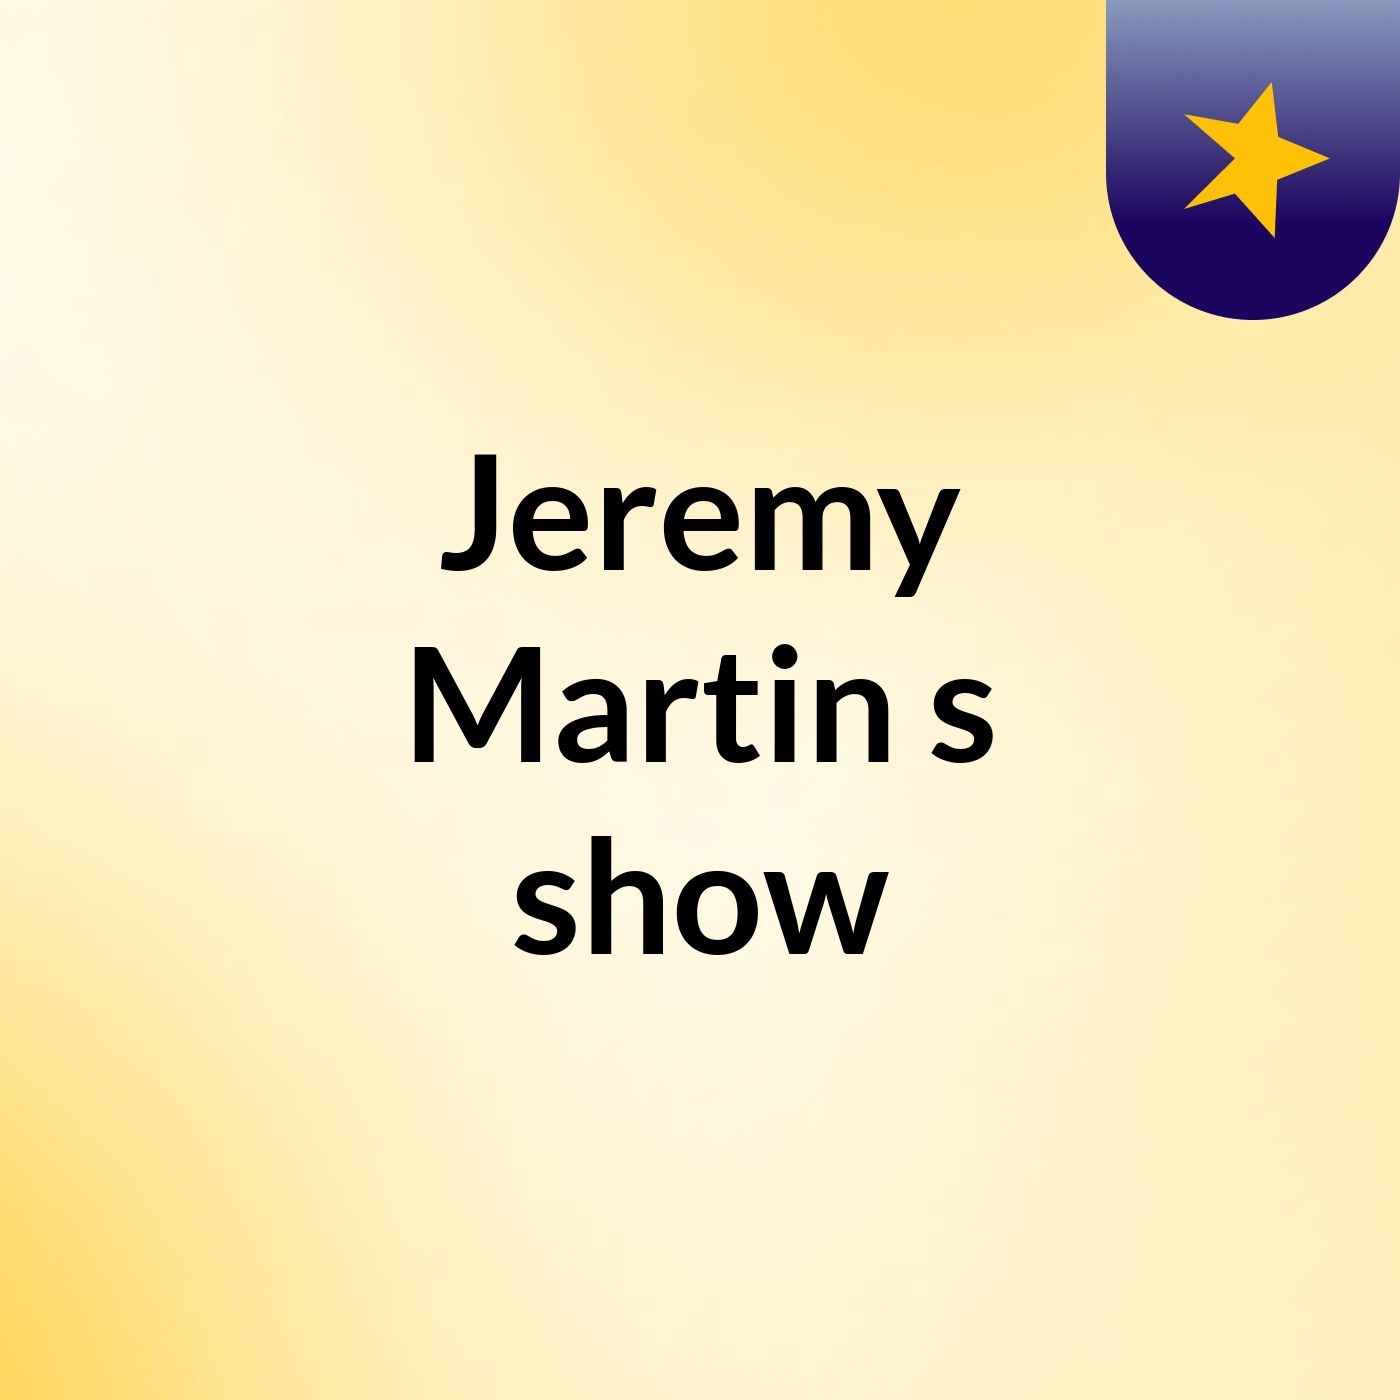 Jeremy Martin's show